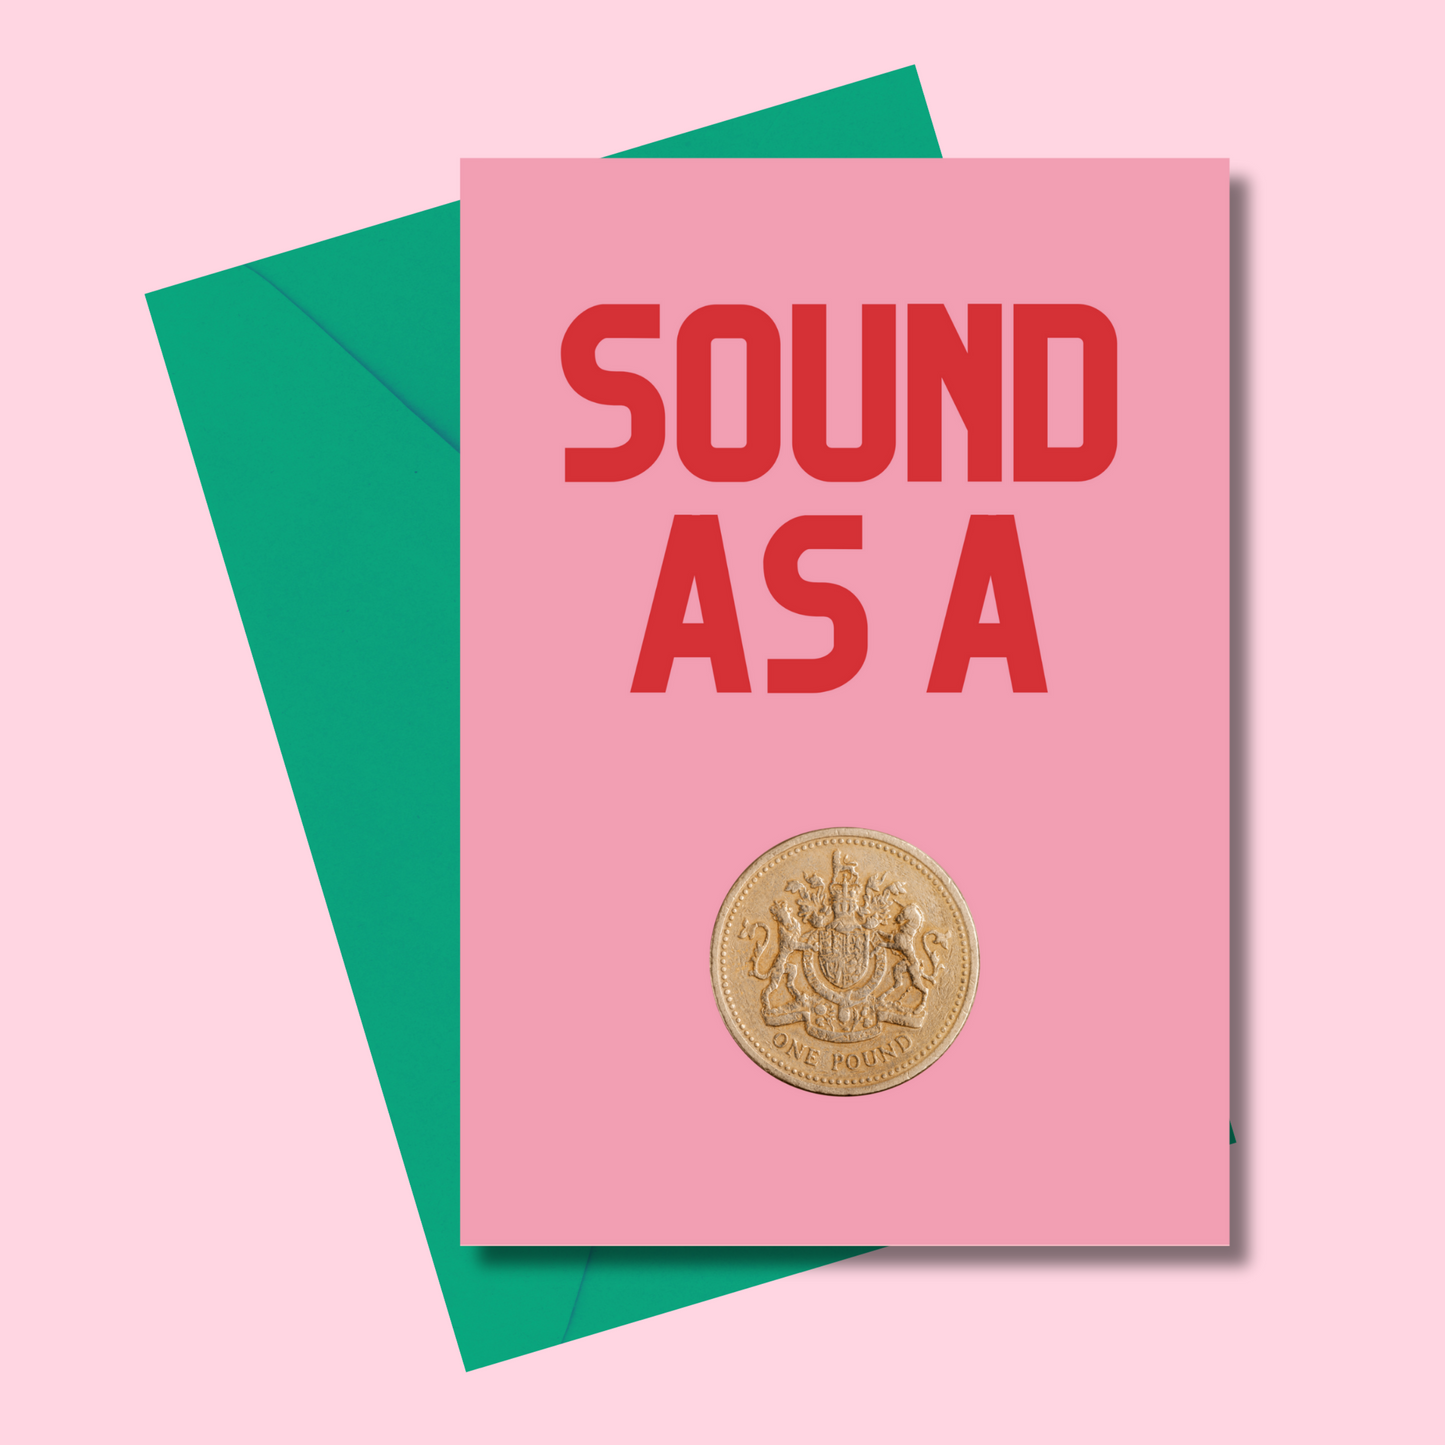 Sound as a Pound (5x7” print/card)